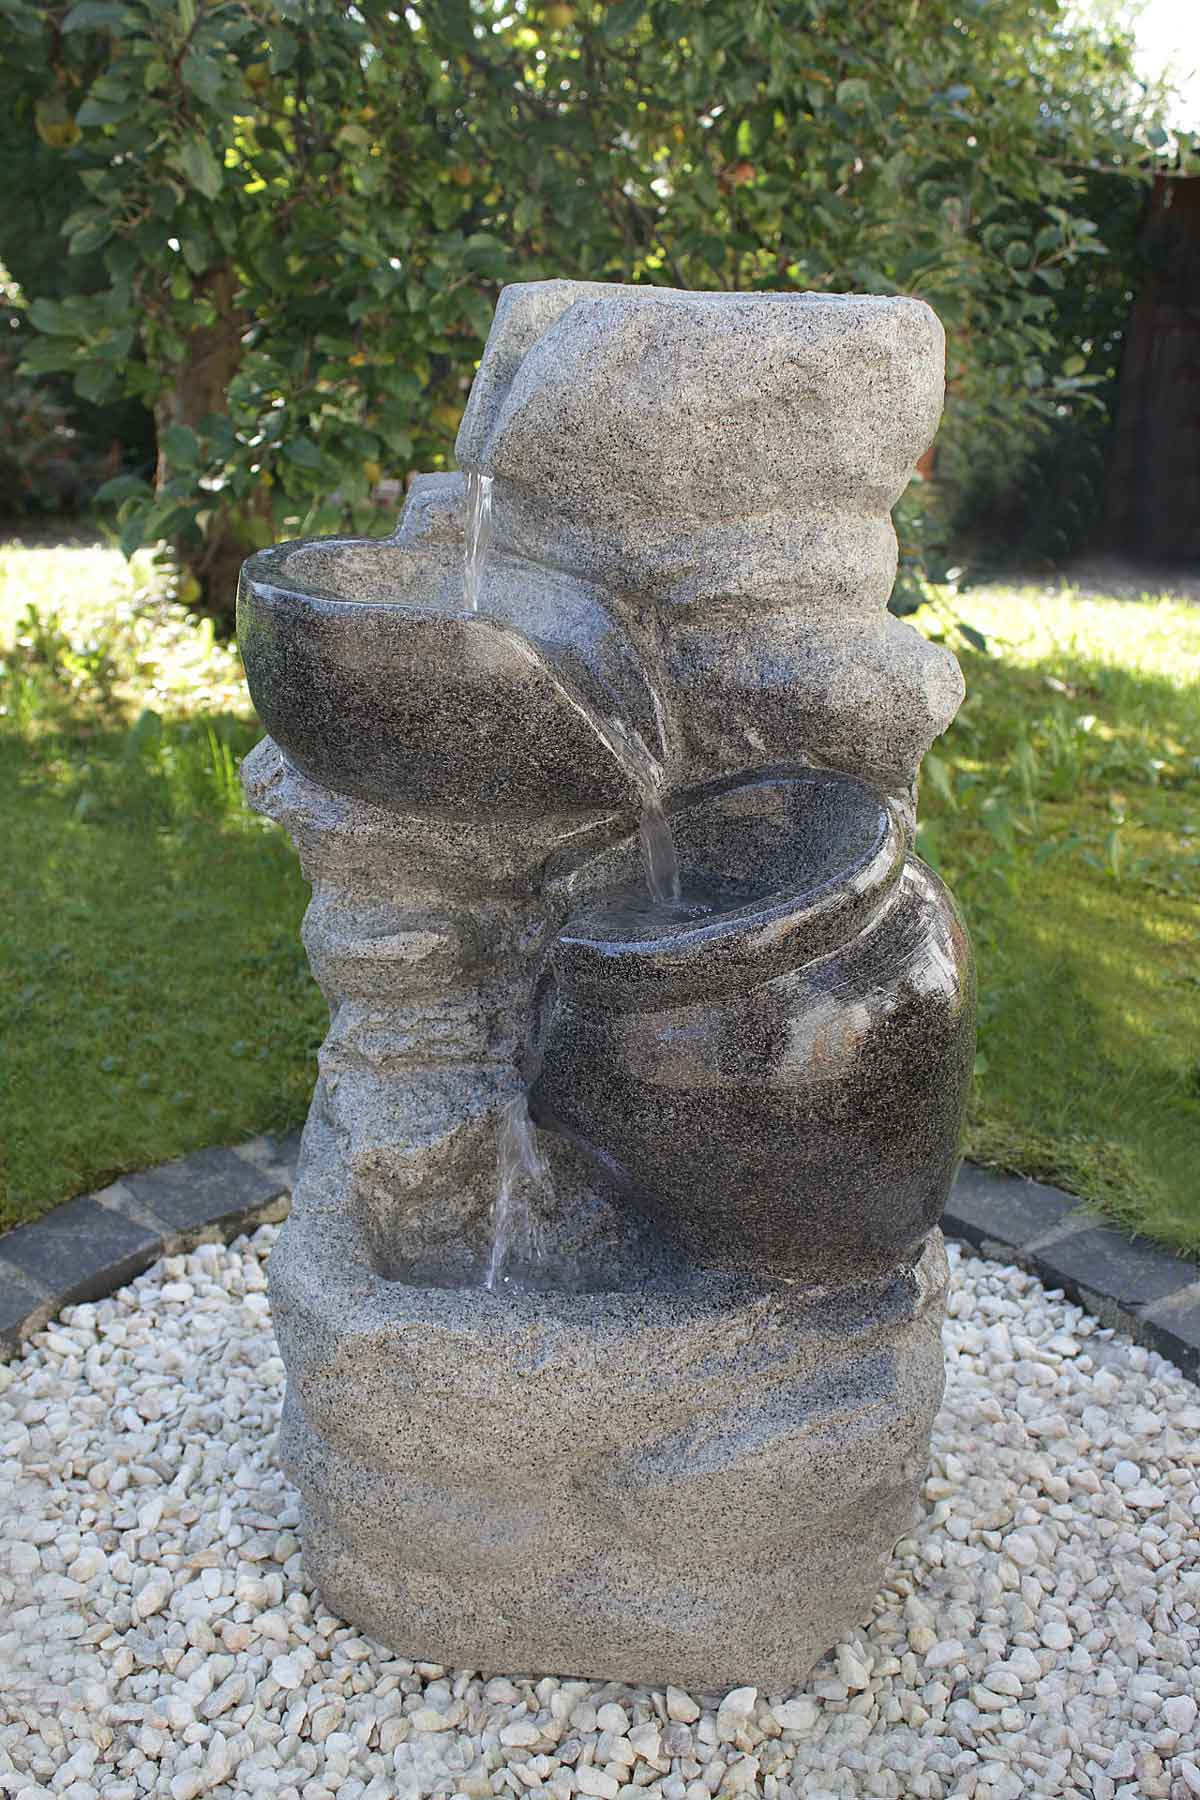 KIOM FoArenaria 10899 69 cm Led Gartenbrunnen tageslichtweiß